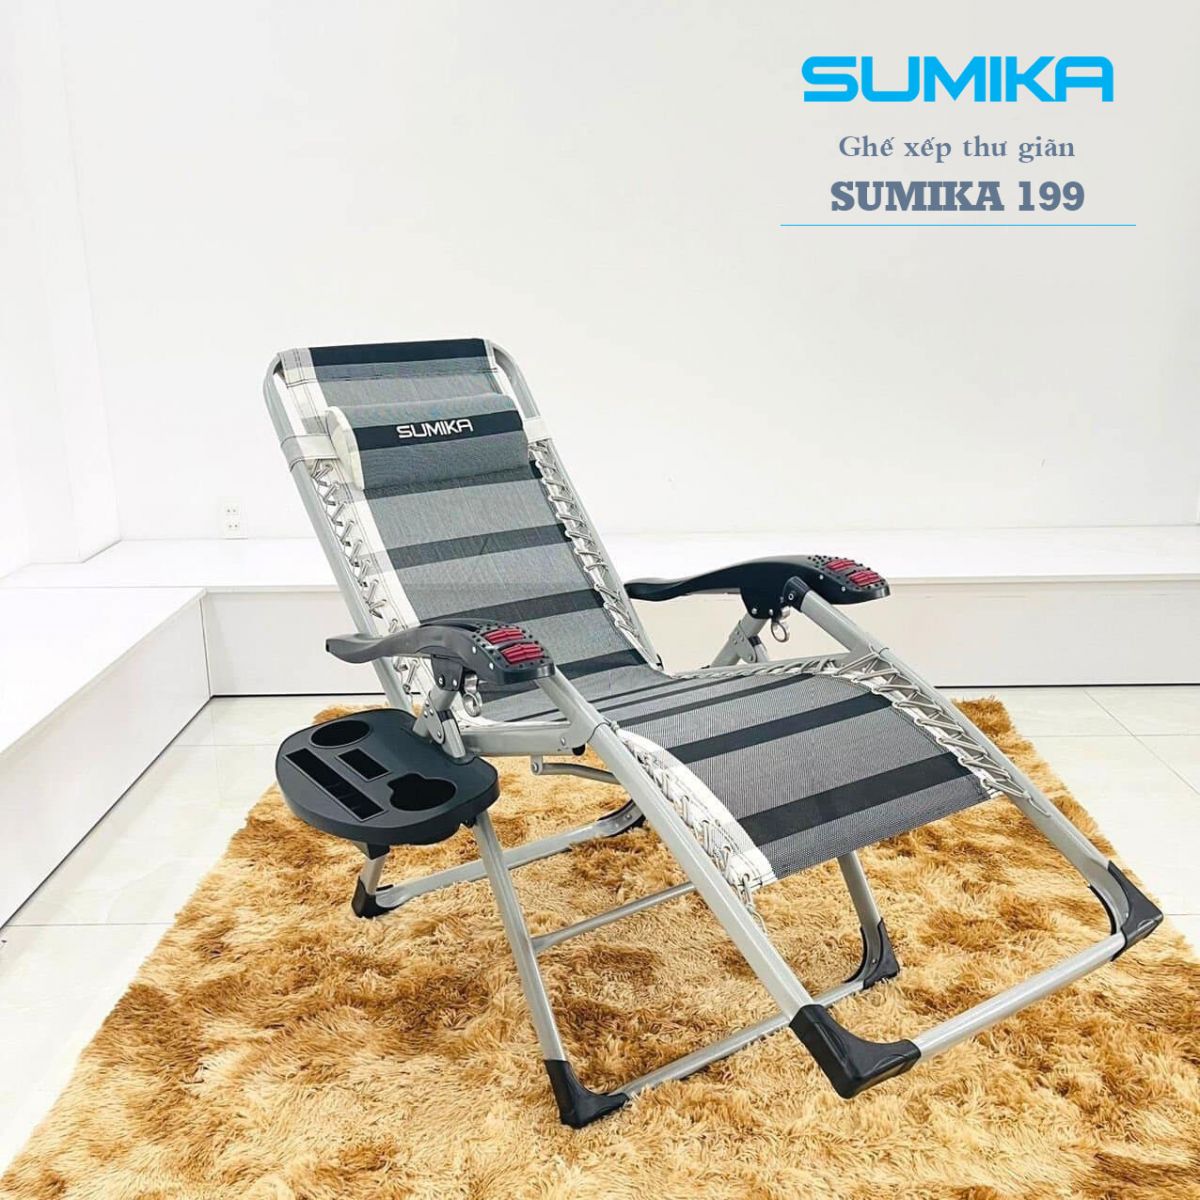 ghe xep thu gian sumika 199 - Ghế xếp thư giãn SUMIKA 199 - lăn tay massage, khung vuông cao cấp